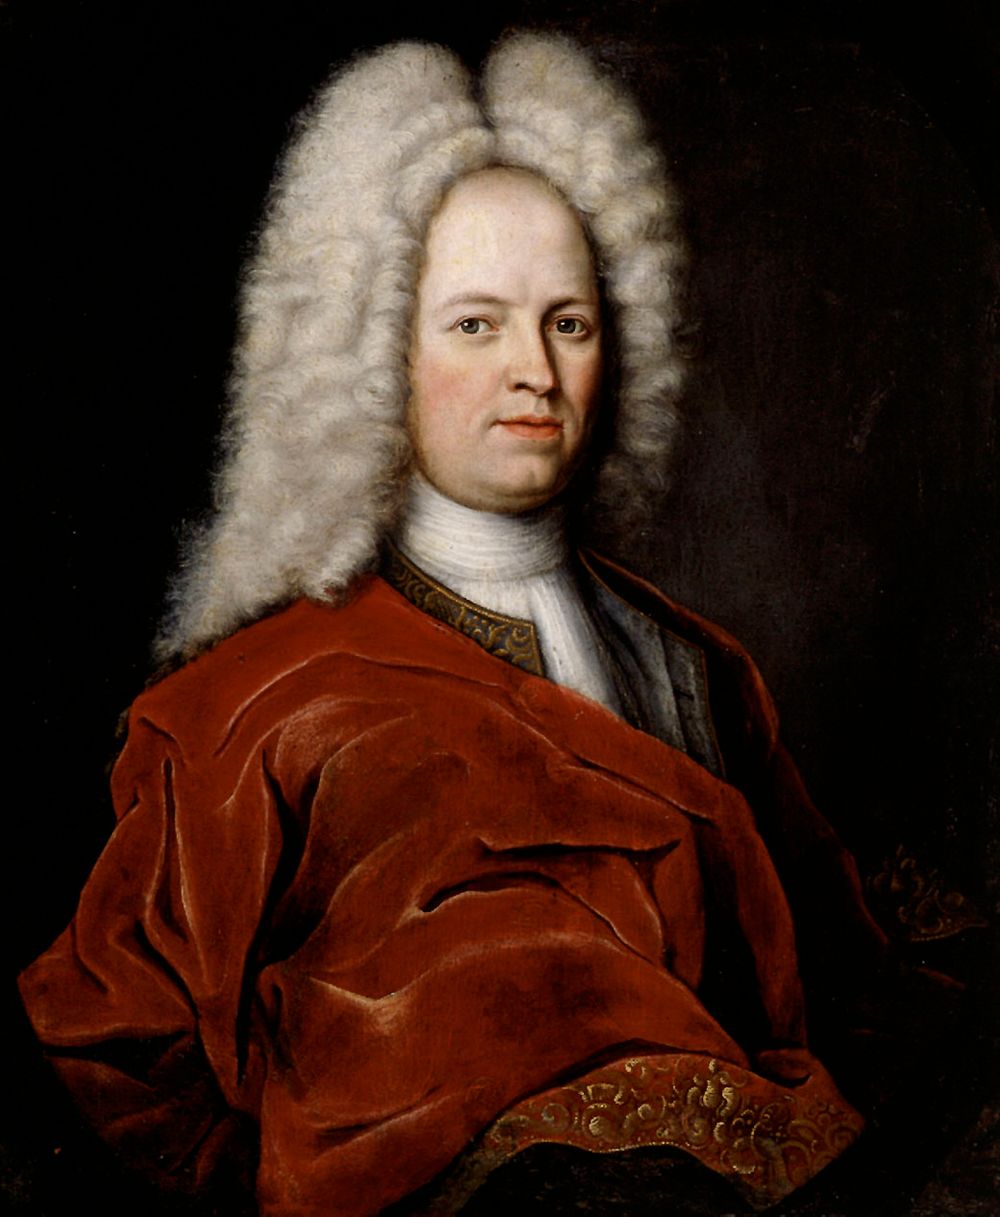 Målat porträtt av en man med lång, vit peruk och röd mantel av sammet.